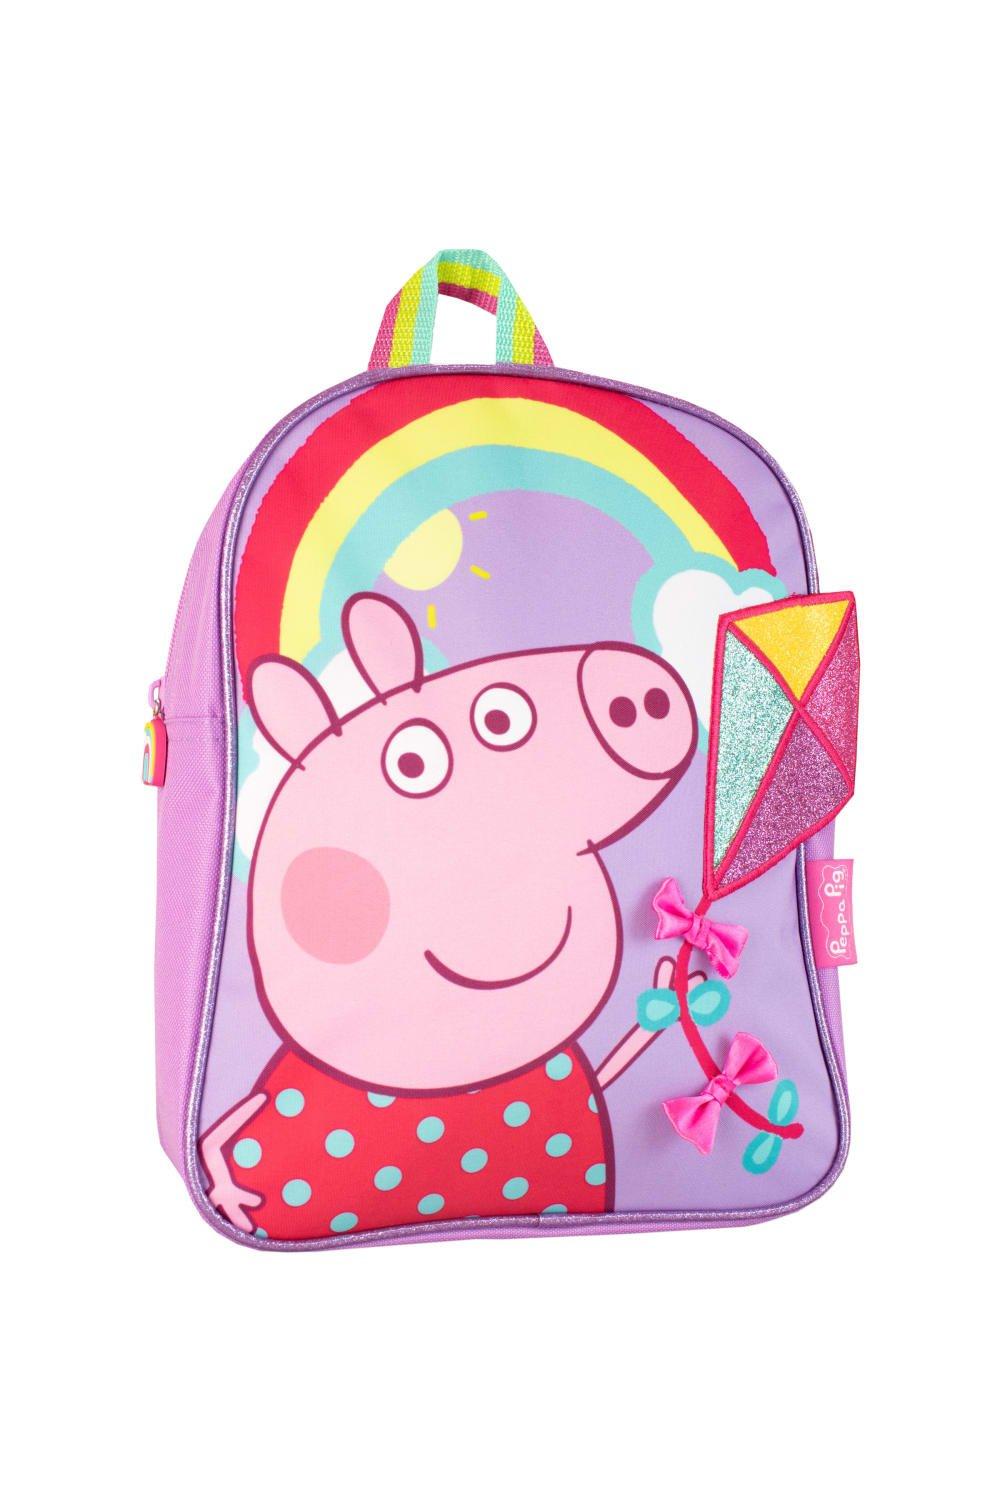 Детский рюкзак Peppa Pig, фиолетовый пазлы alatoys свинка пеппа детская площадка пзл2023